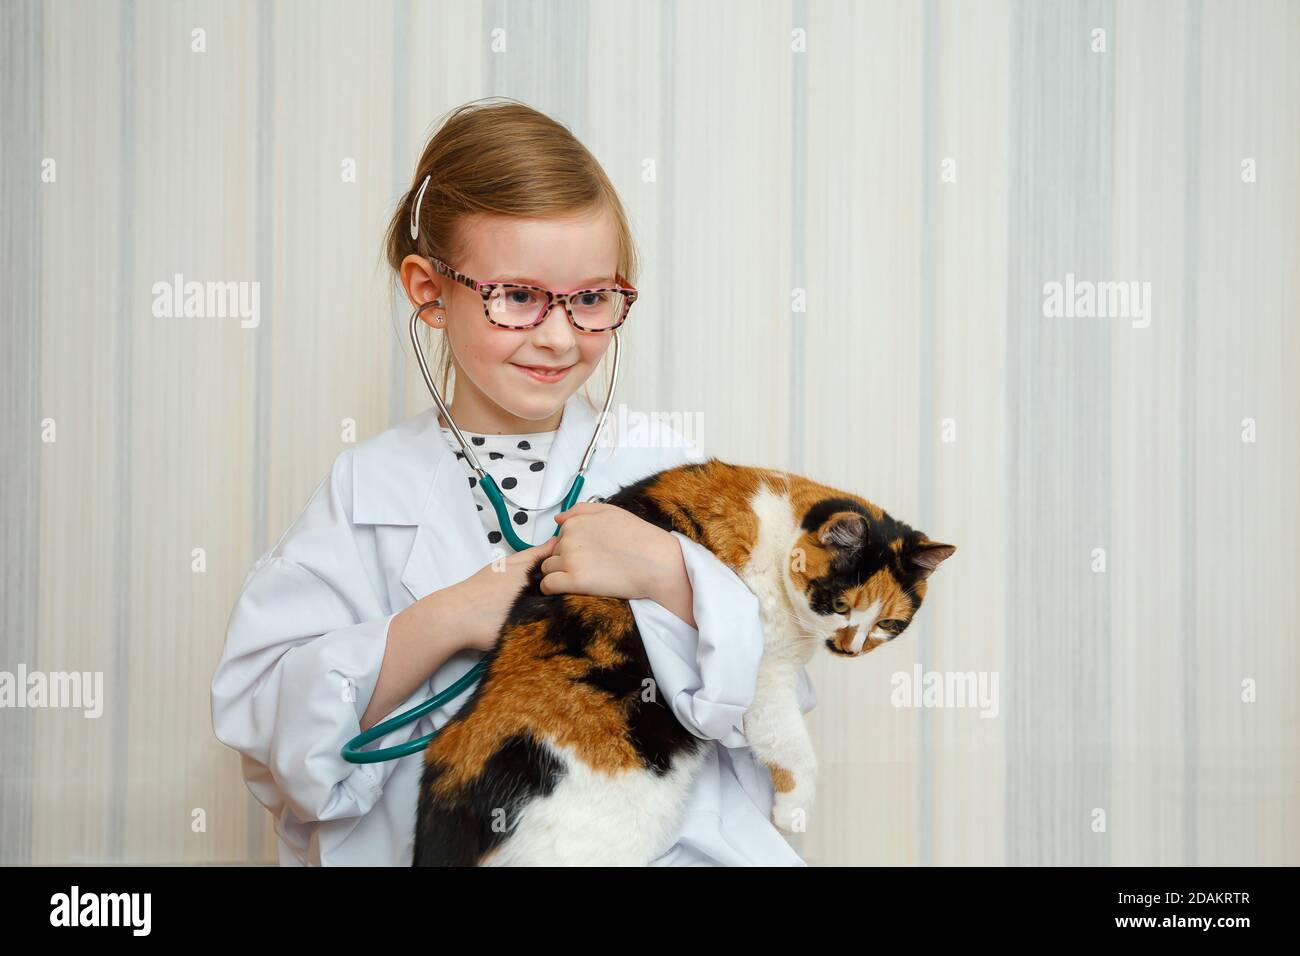 Une petite fille dans un manteau de docteur sourit et invite à un traitement. Le patient est un chat domestique. Jeu médical éducatif. Banque D'Images